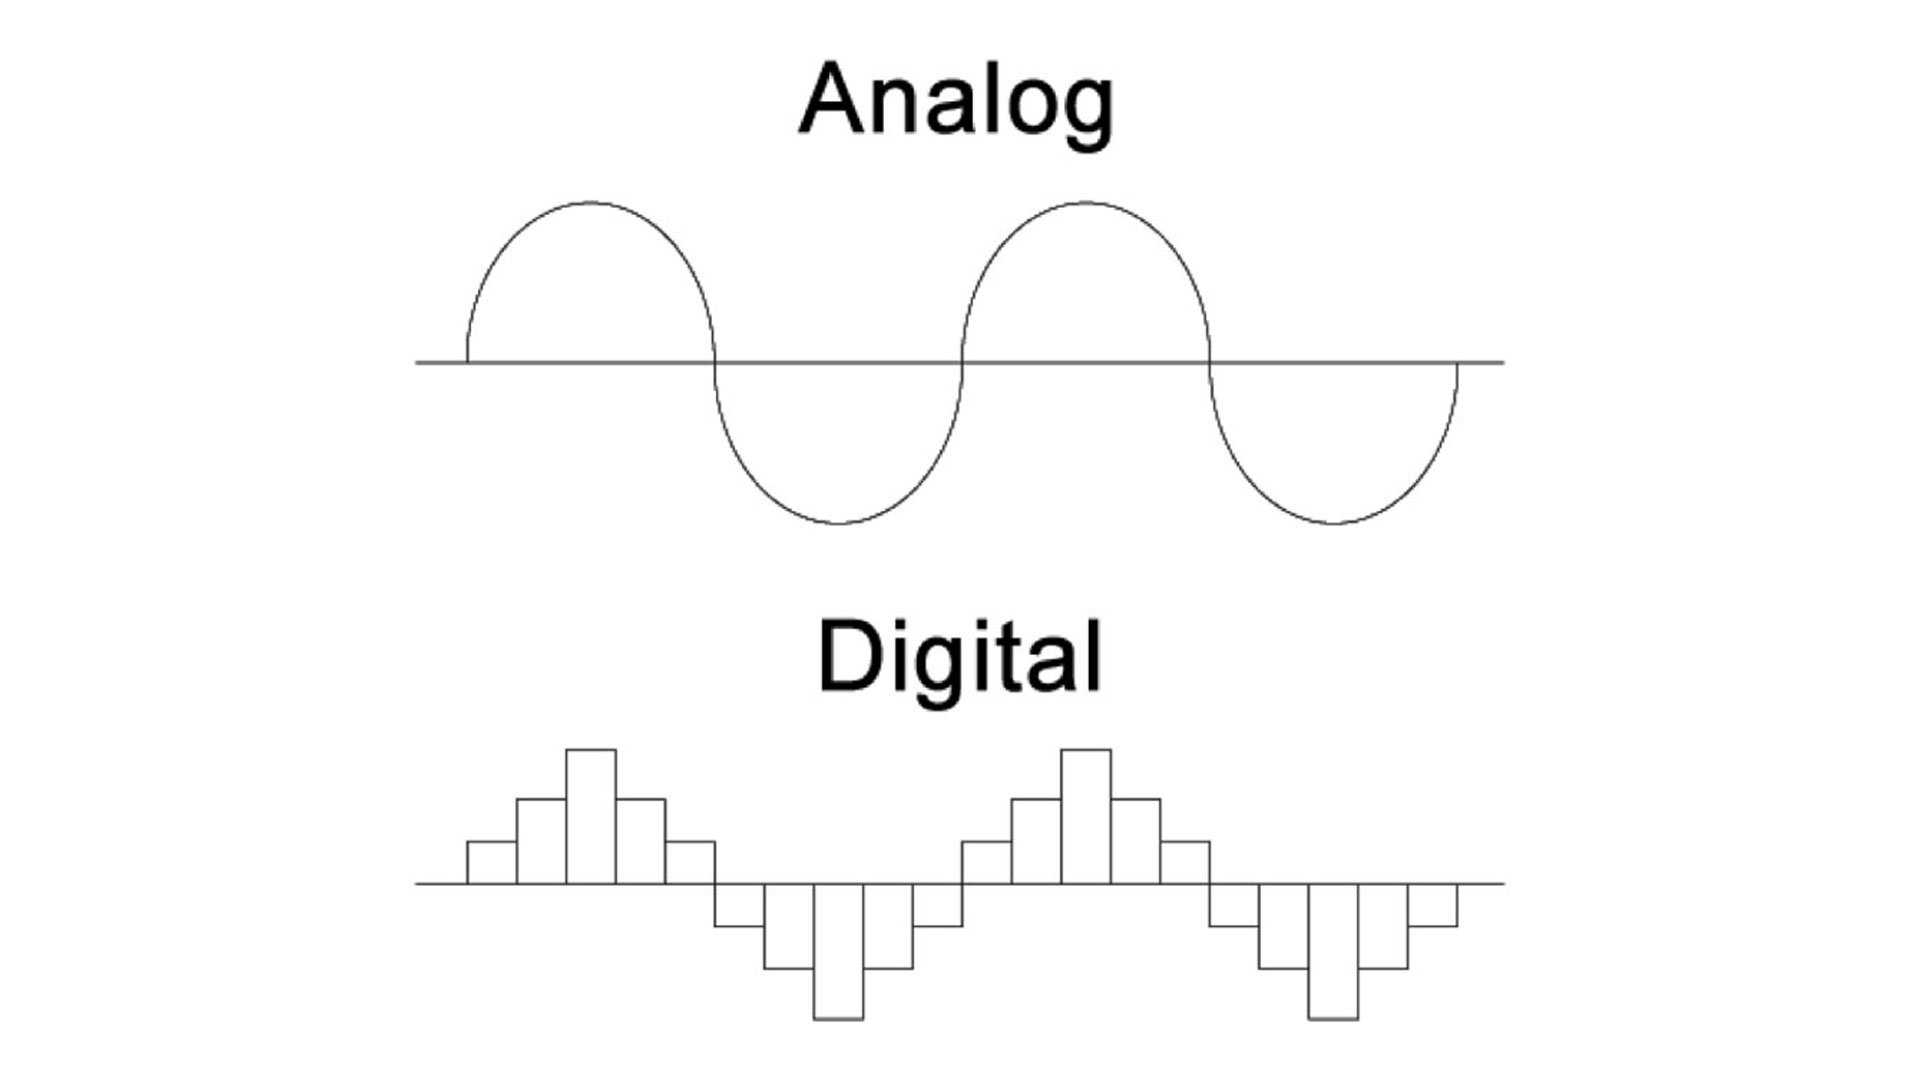 تفاوت ساختار آنالوگ و دیجیتال